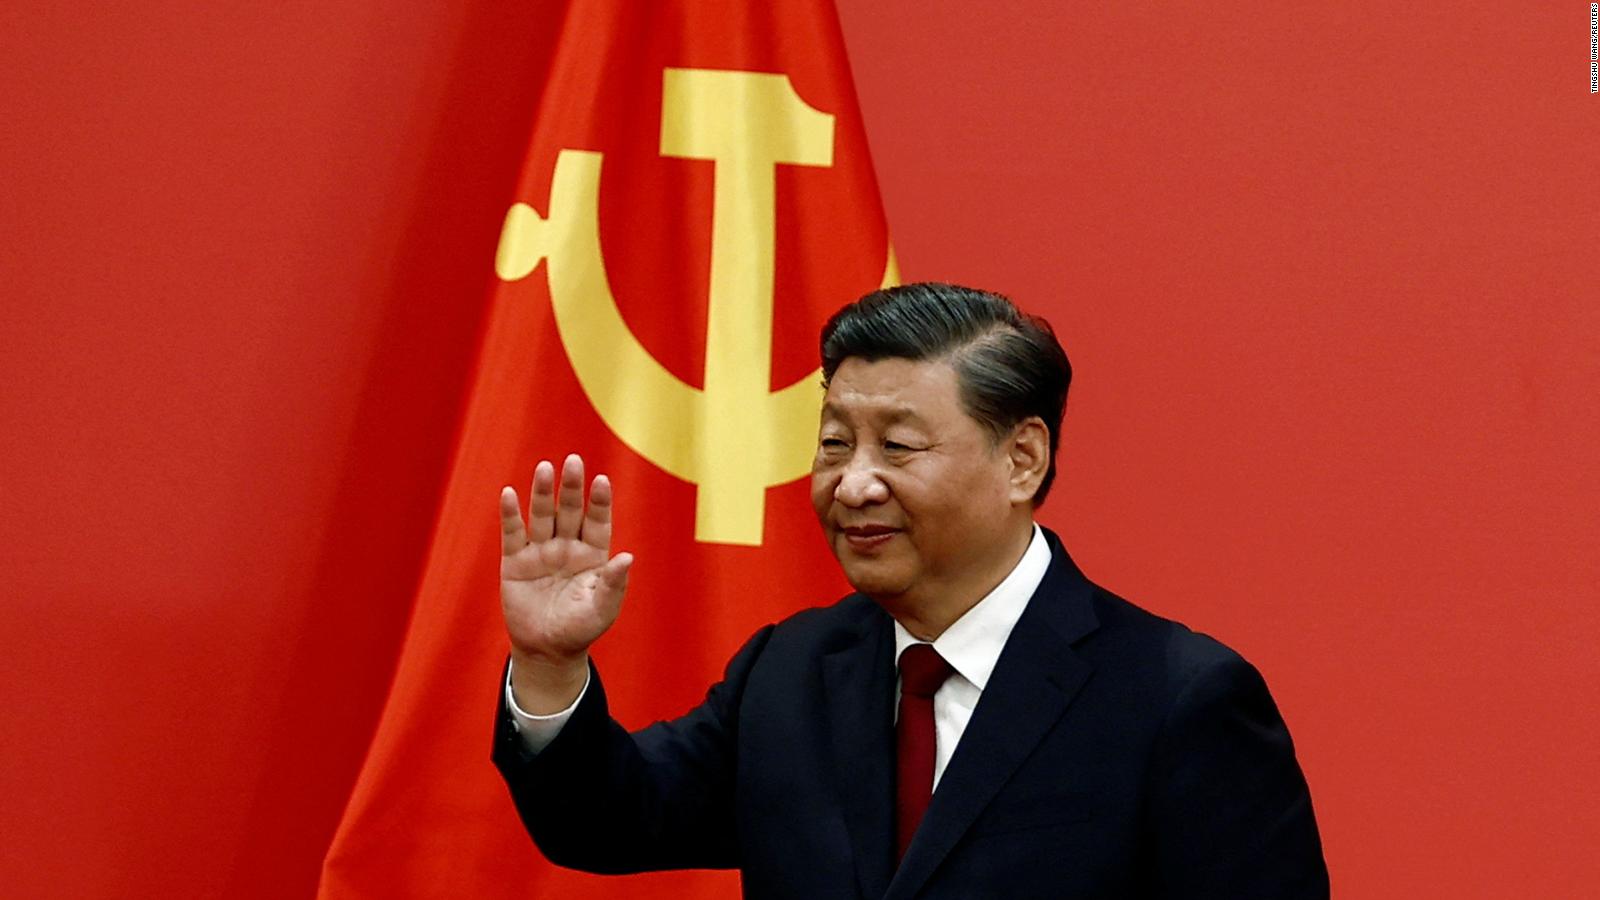 Xi Jinping se asegura un tercer mandato sin precedentes como presidente de China en una votación ceremonial